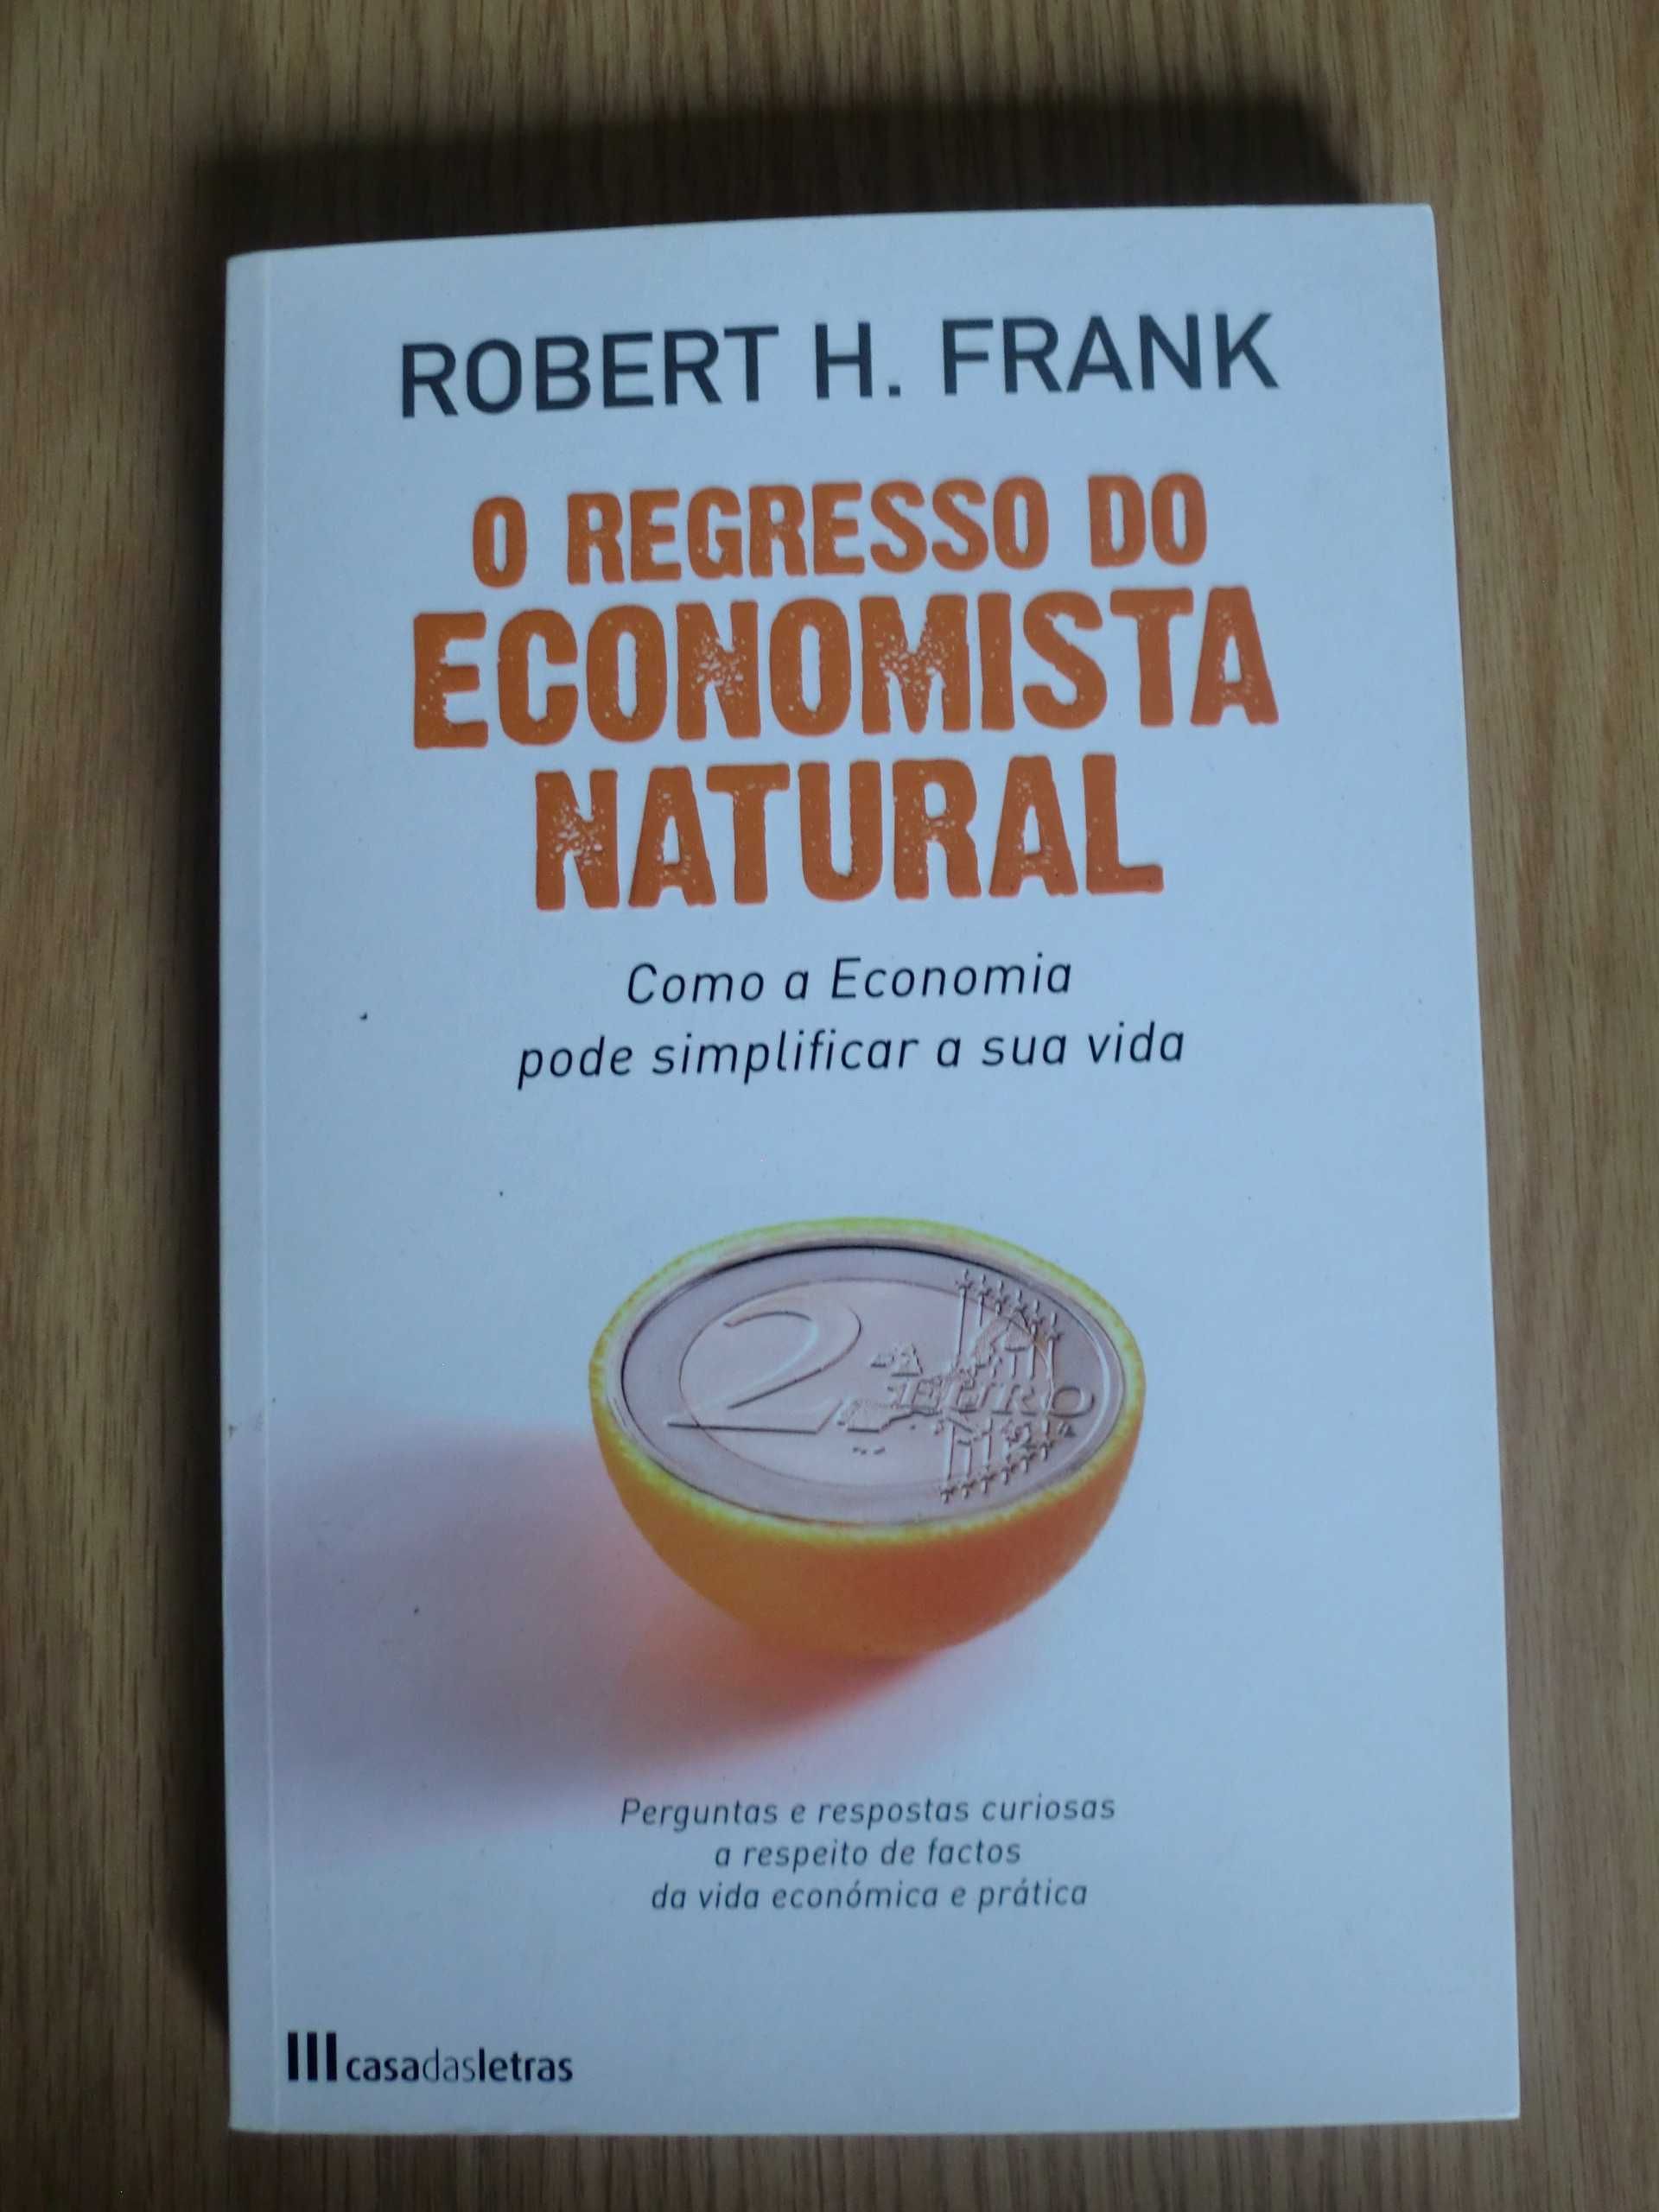 O Regresso do Economista Natural
de Robert H. Frank